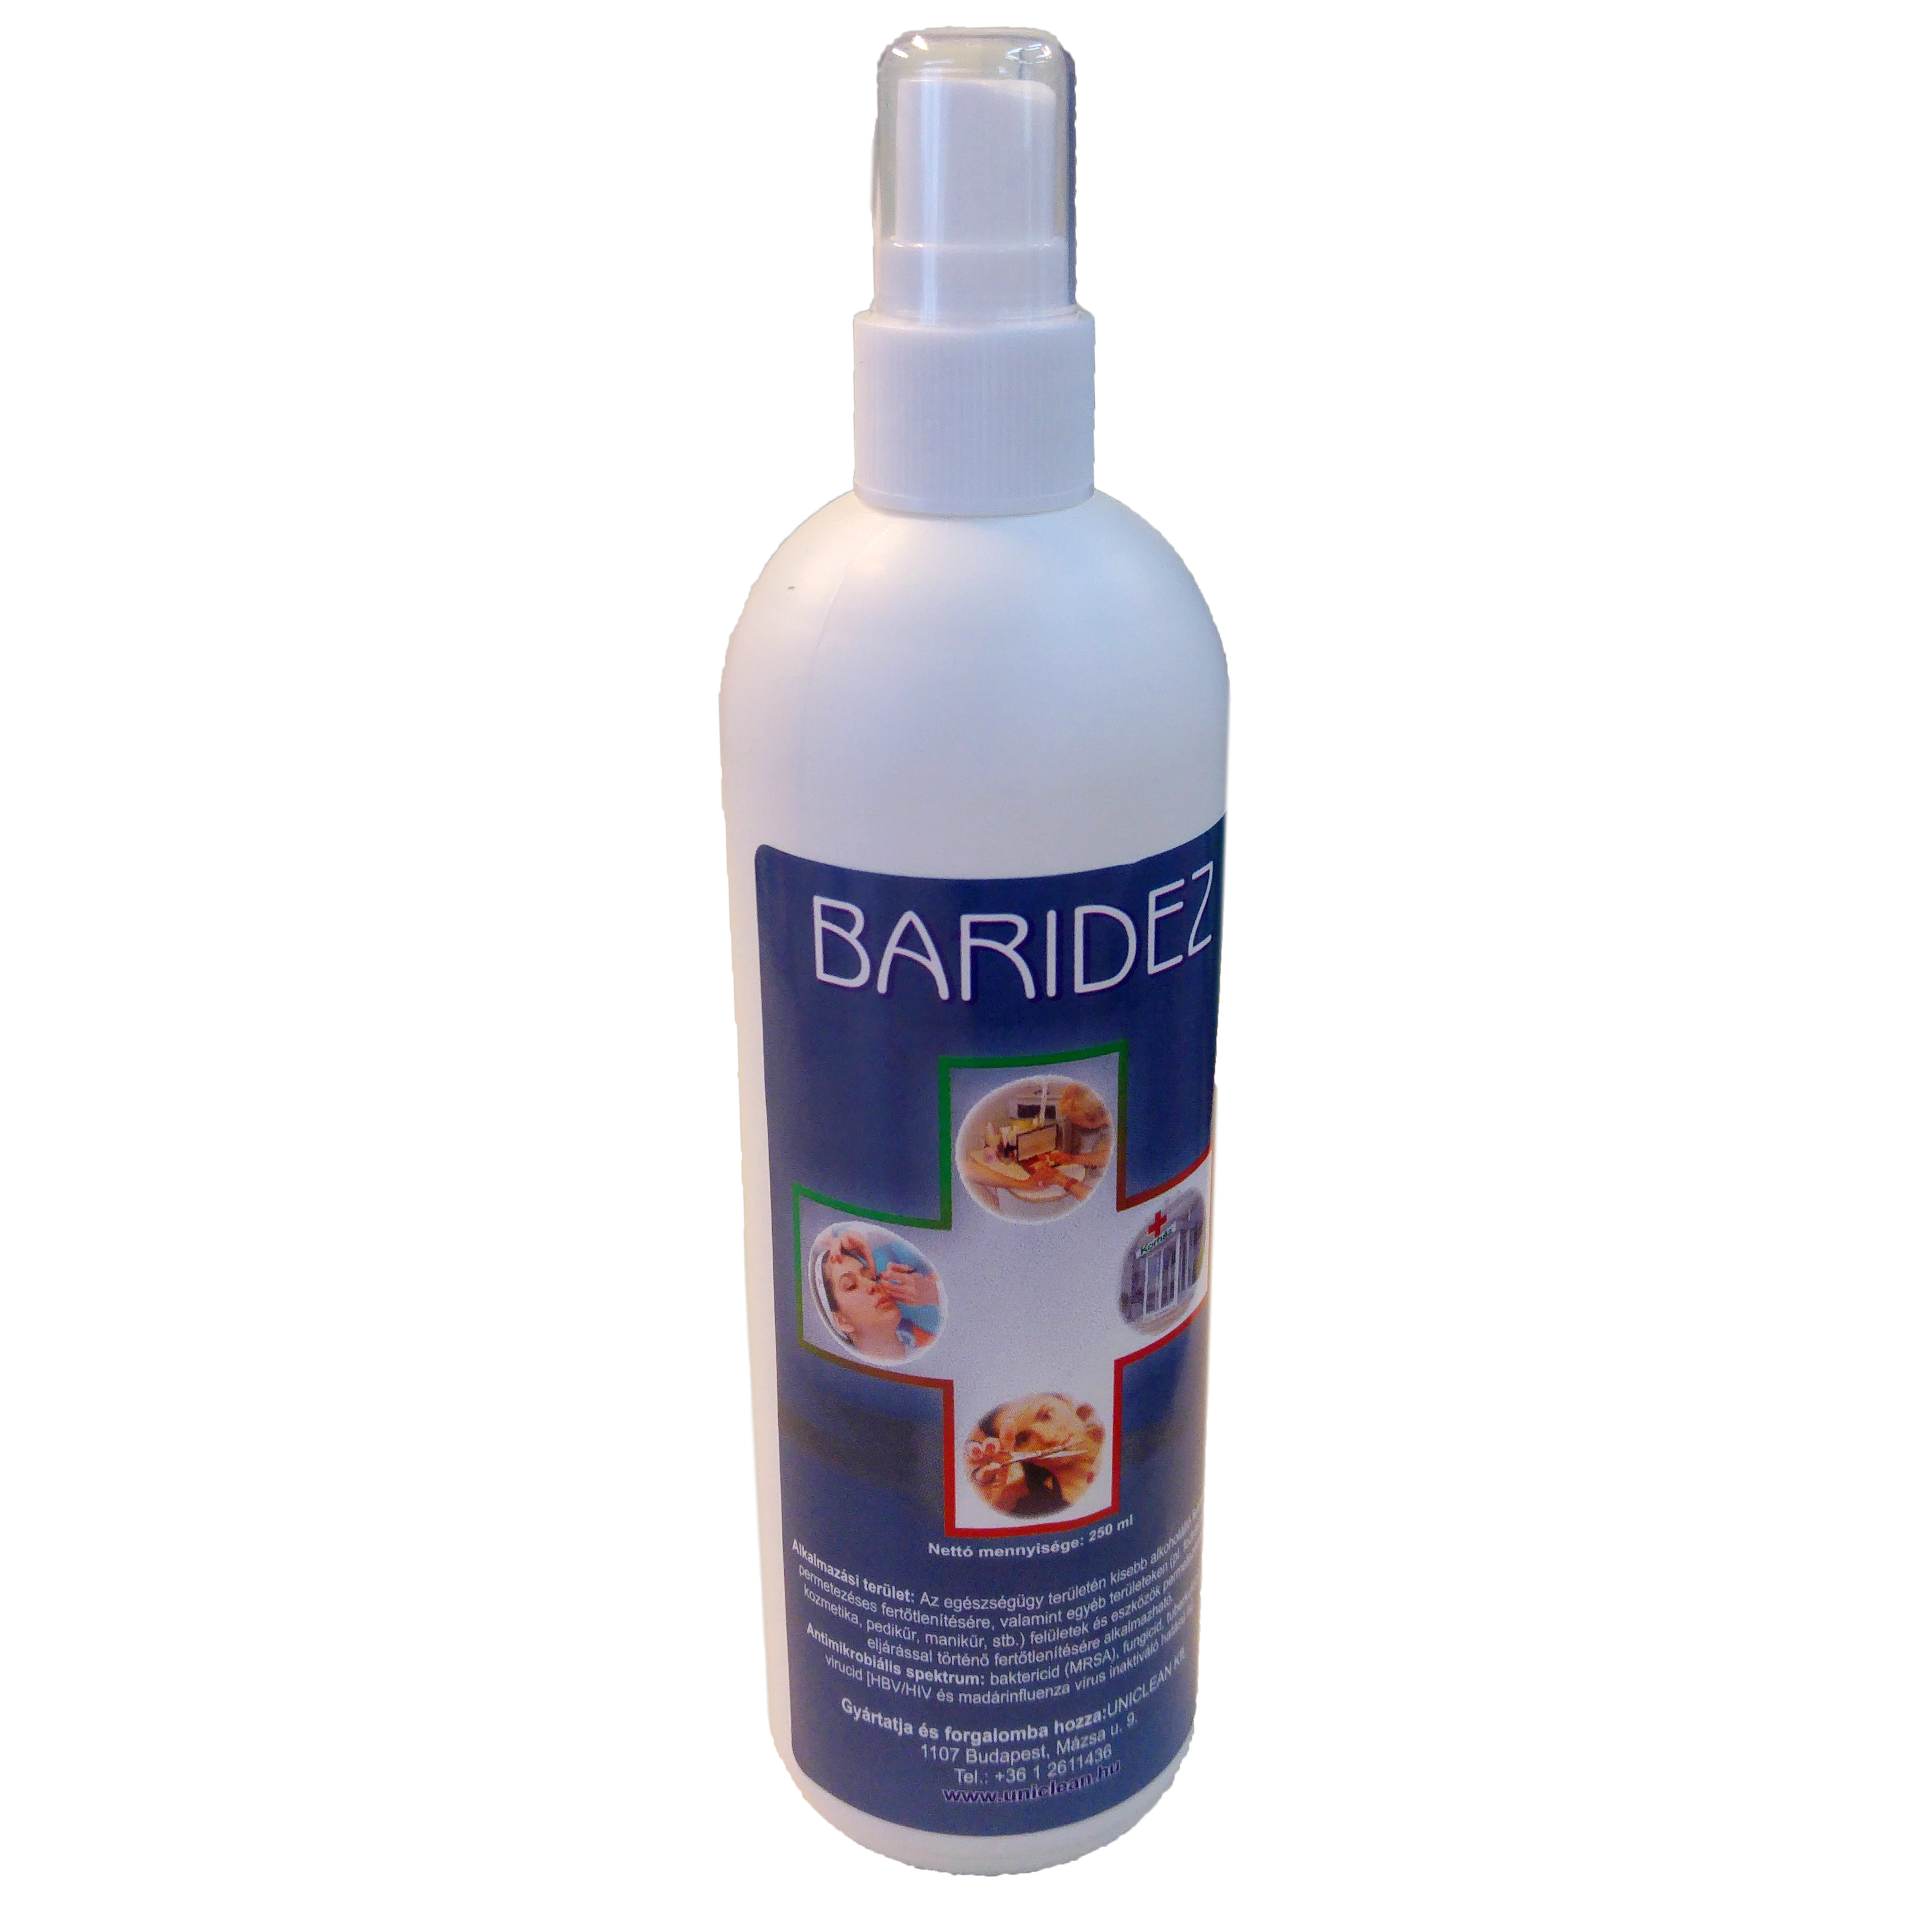 Baridez felület fertőtlenítő szórófejes flakon alkoholos bázisú (34,8% etanol), 250 ml